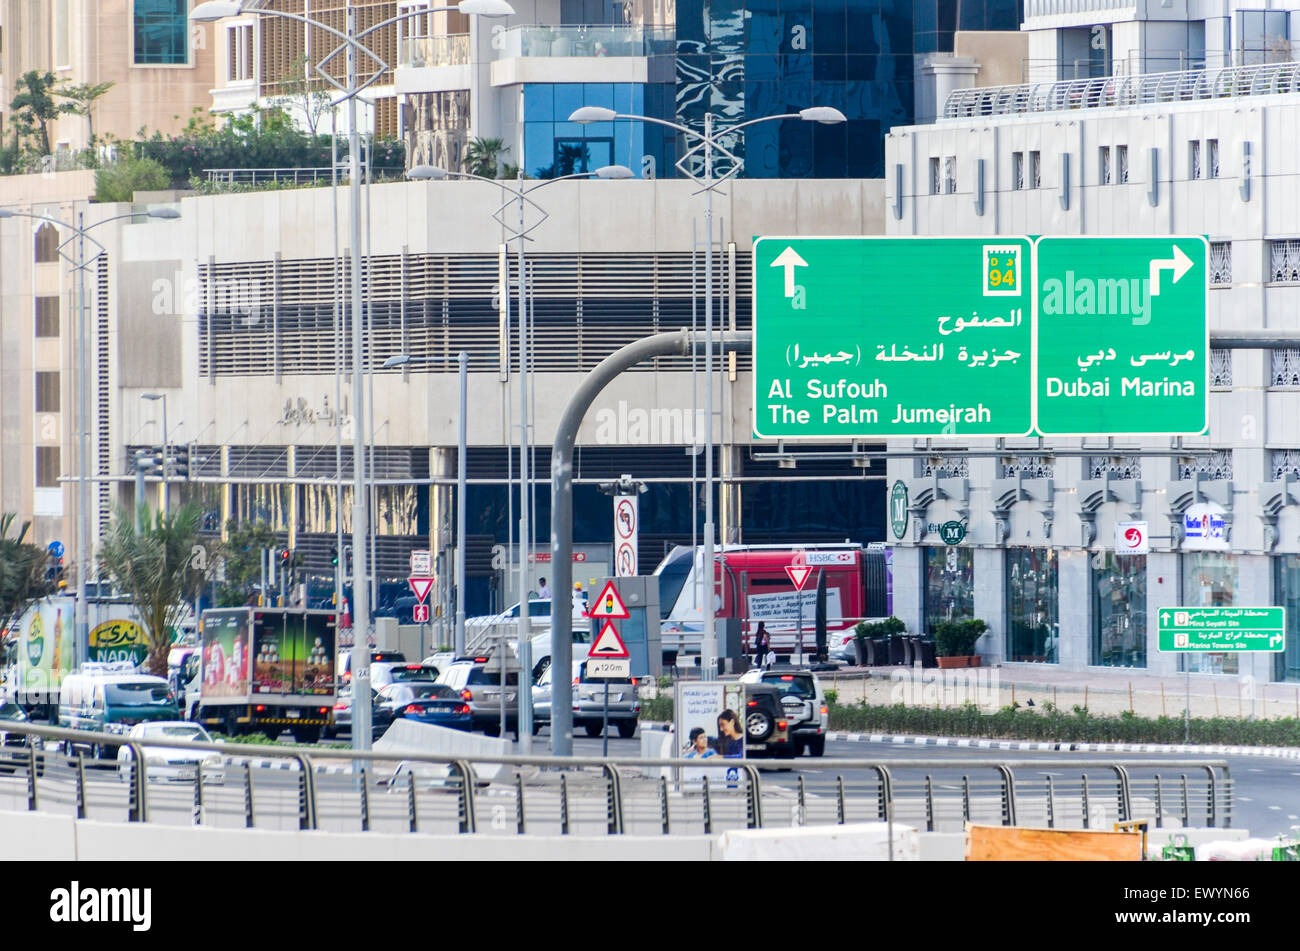 Roads of Dubai UAE, and signs for Al Sufouh, Dubai Marina, The Palm Jumeirah Stock Photo